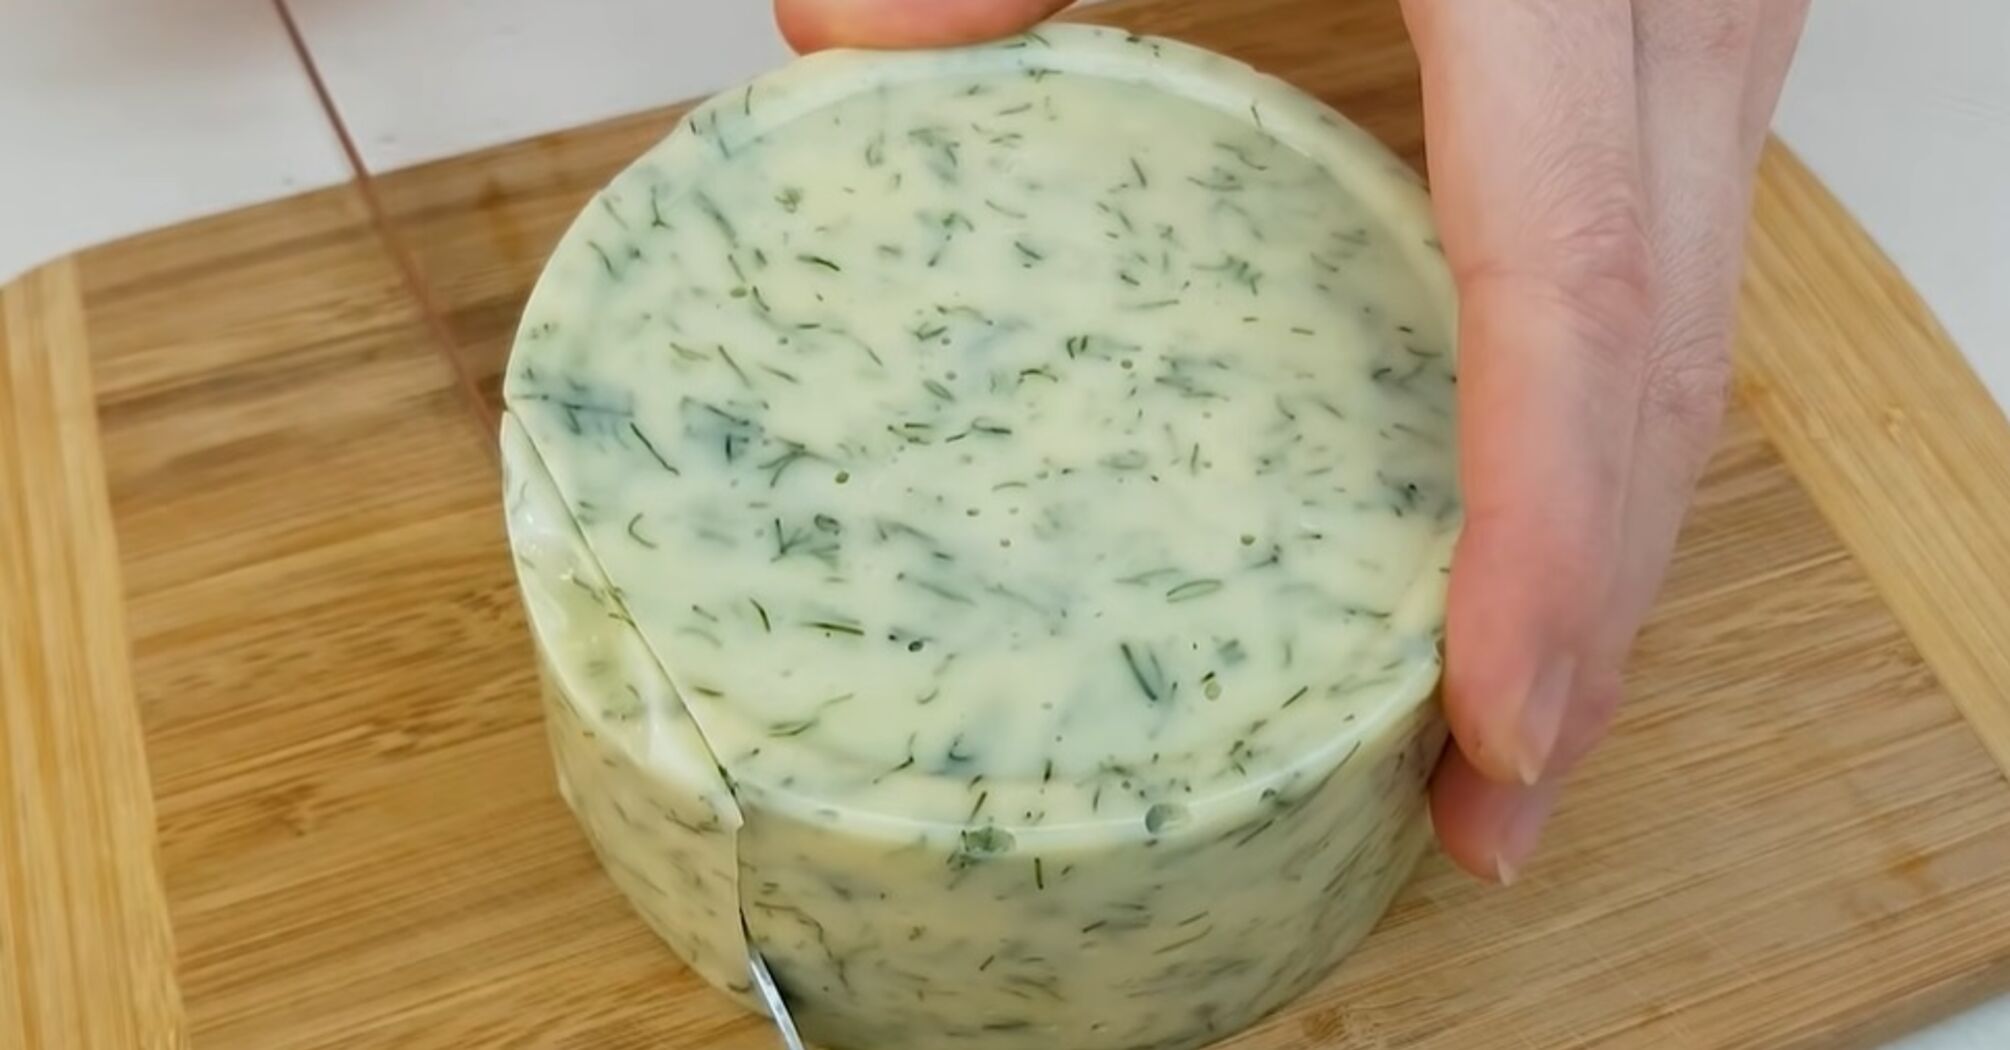 4 інгредієнти й 10 хвилин роботи: як приготувати смачний домашній сир (відео)